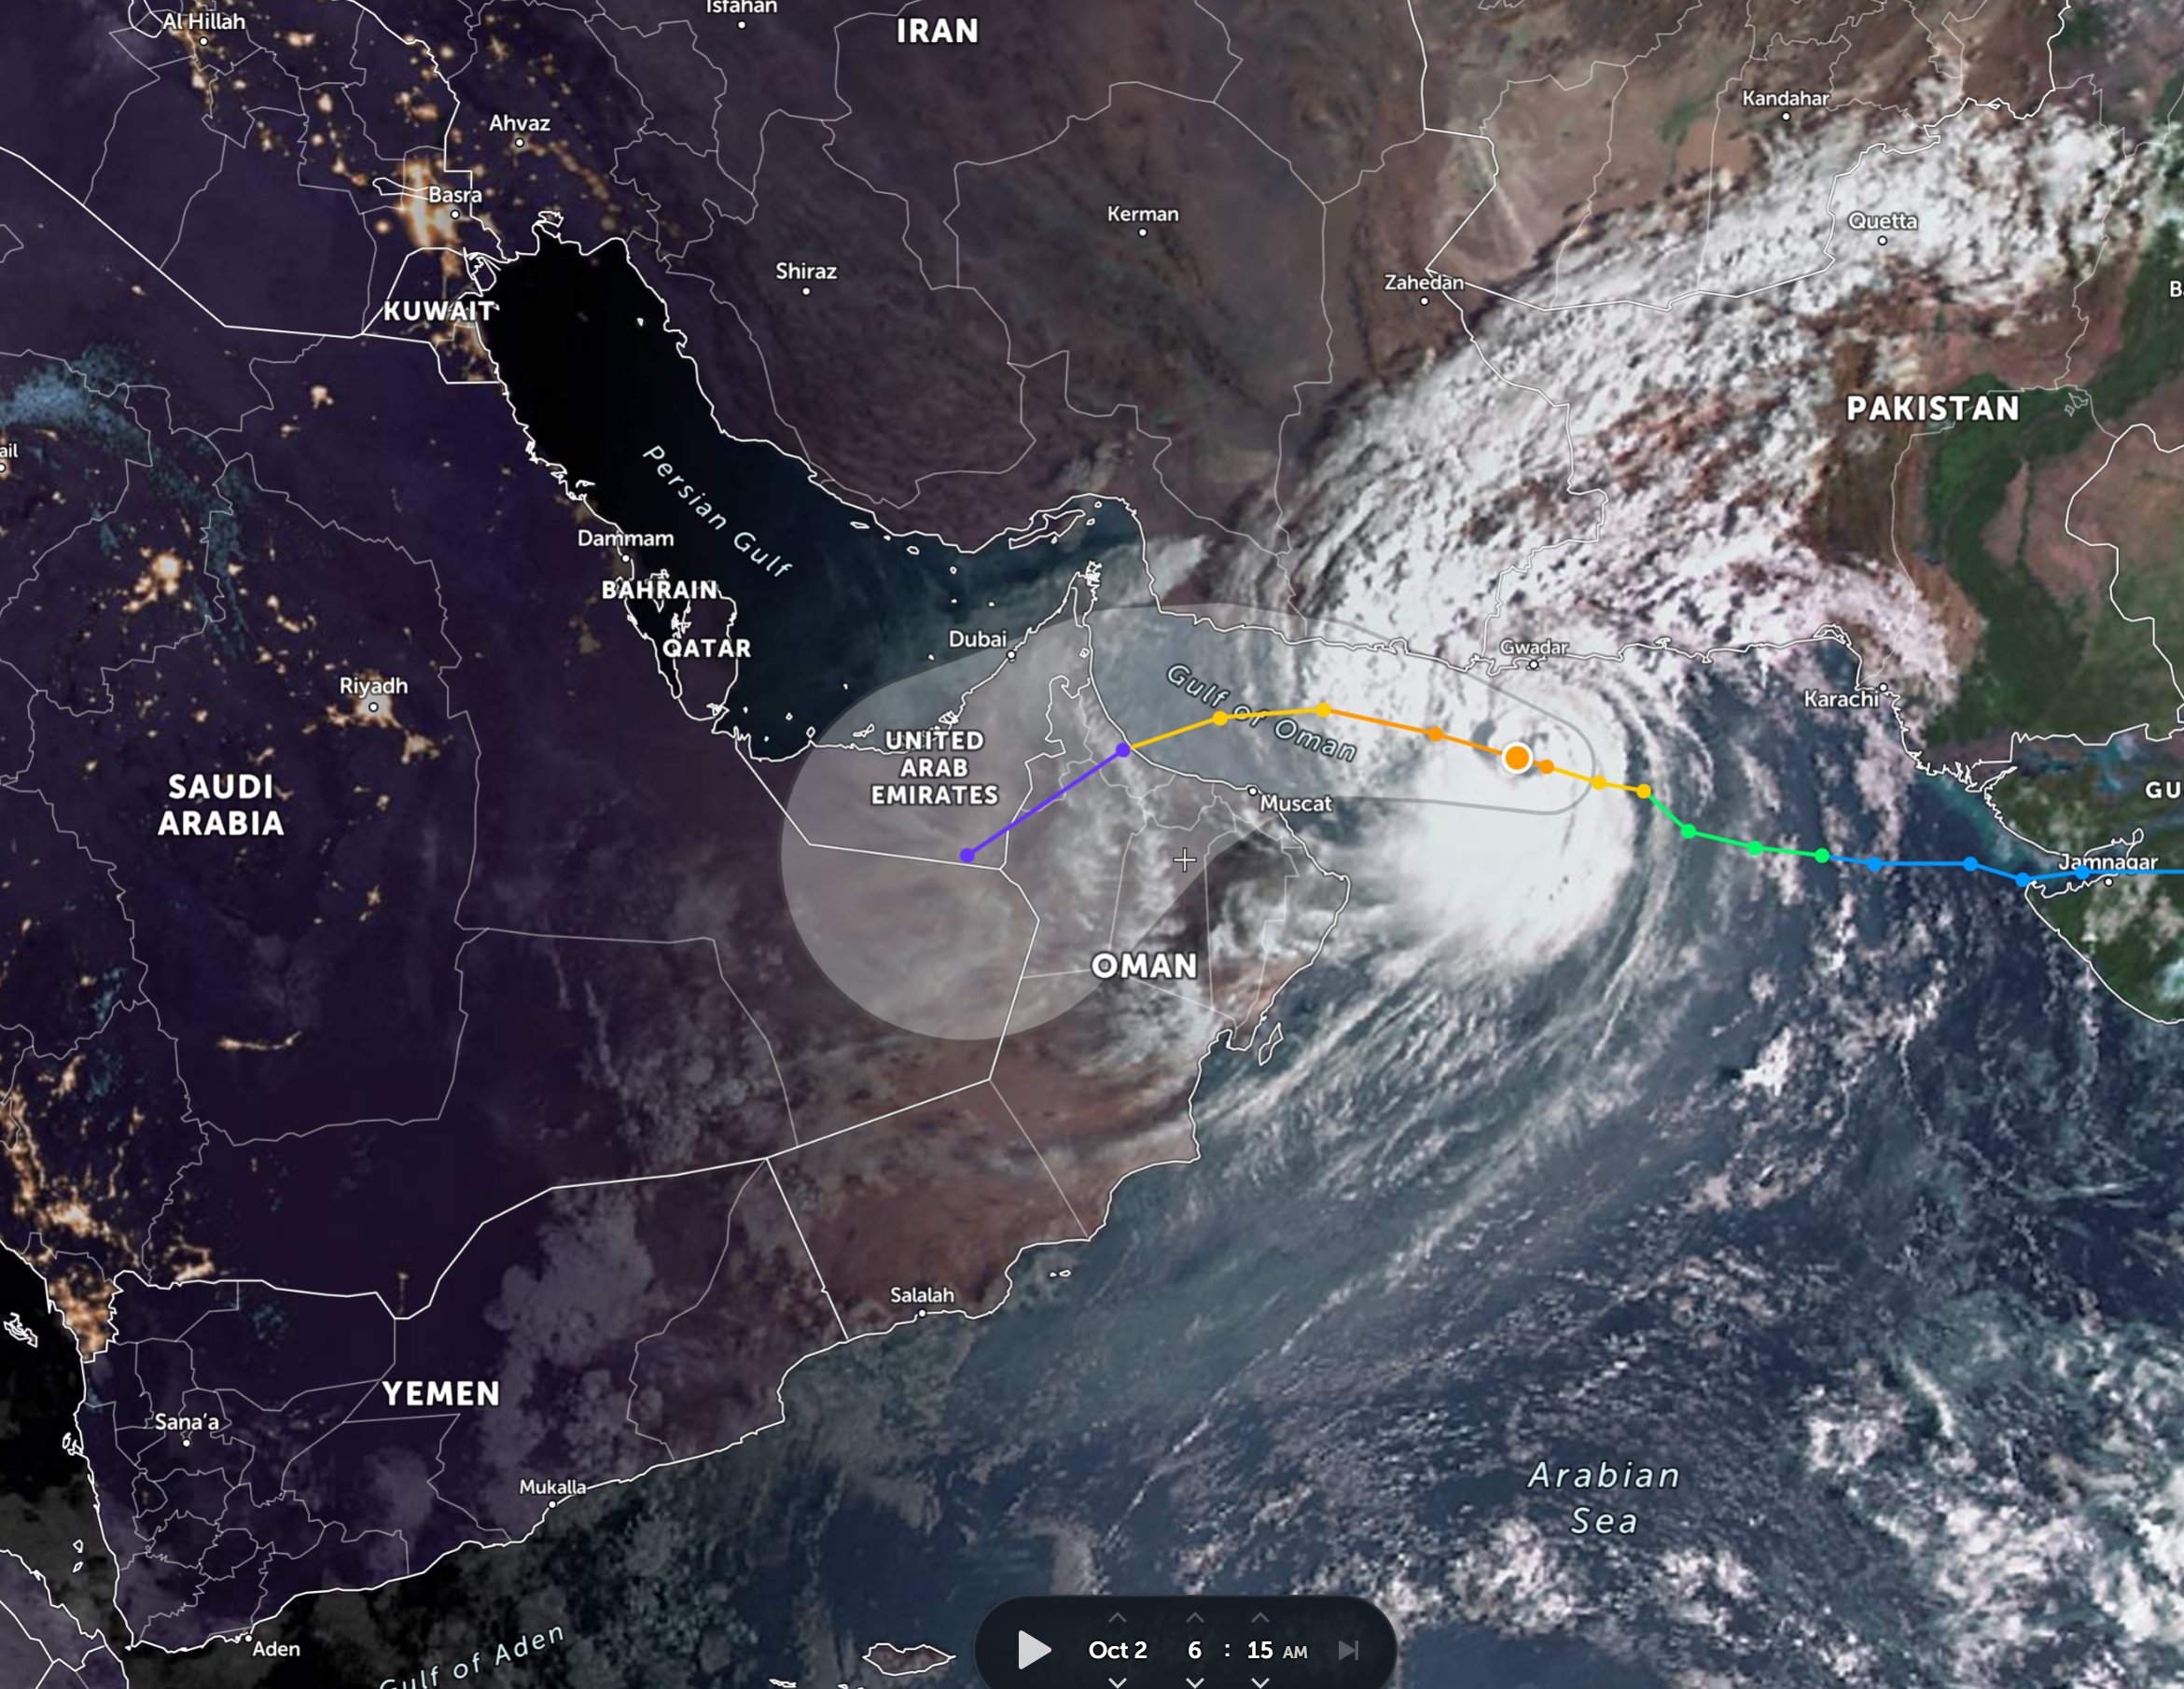 مختص سعودي يكشف آخر تطورات إعصار شاهين العماني وبعده عن حدود المملكة